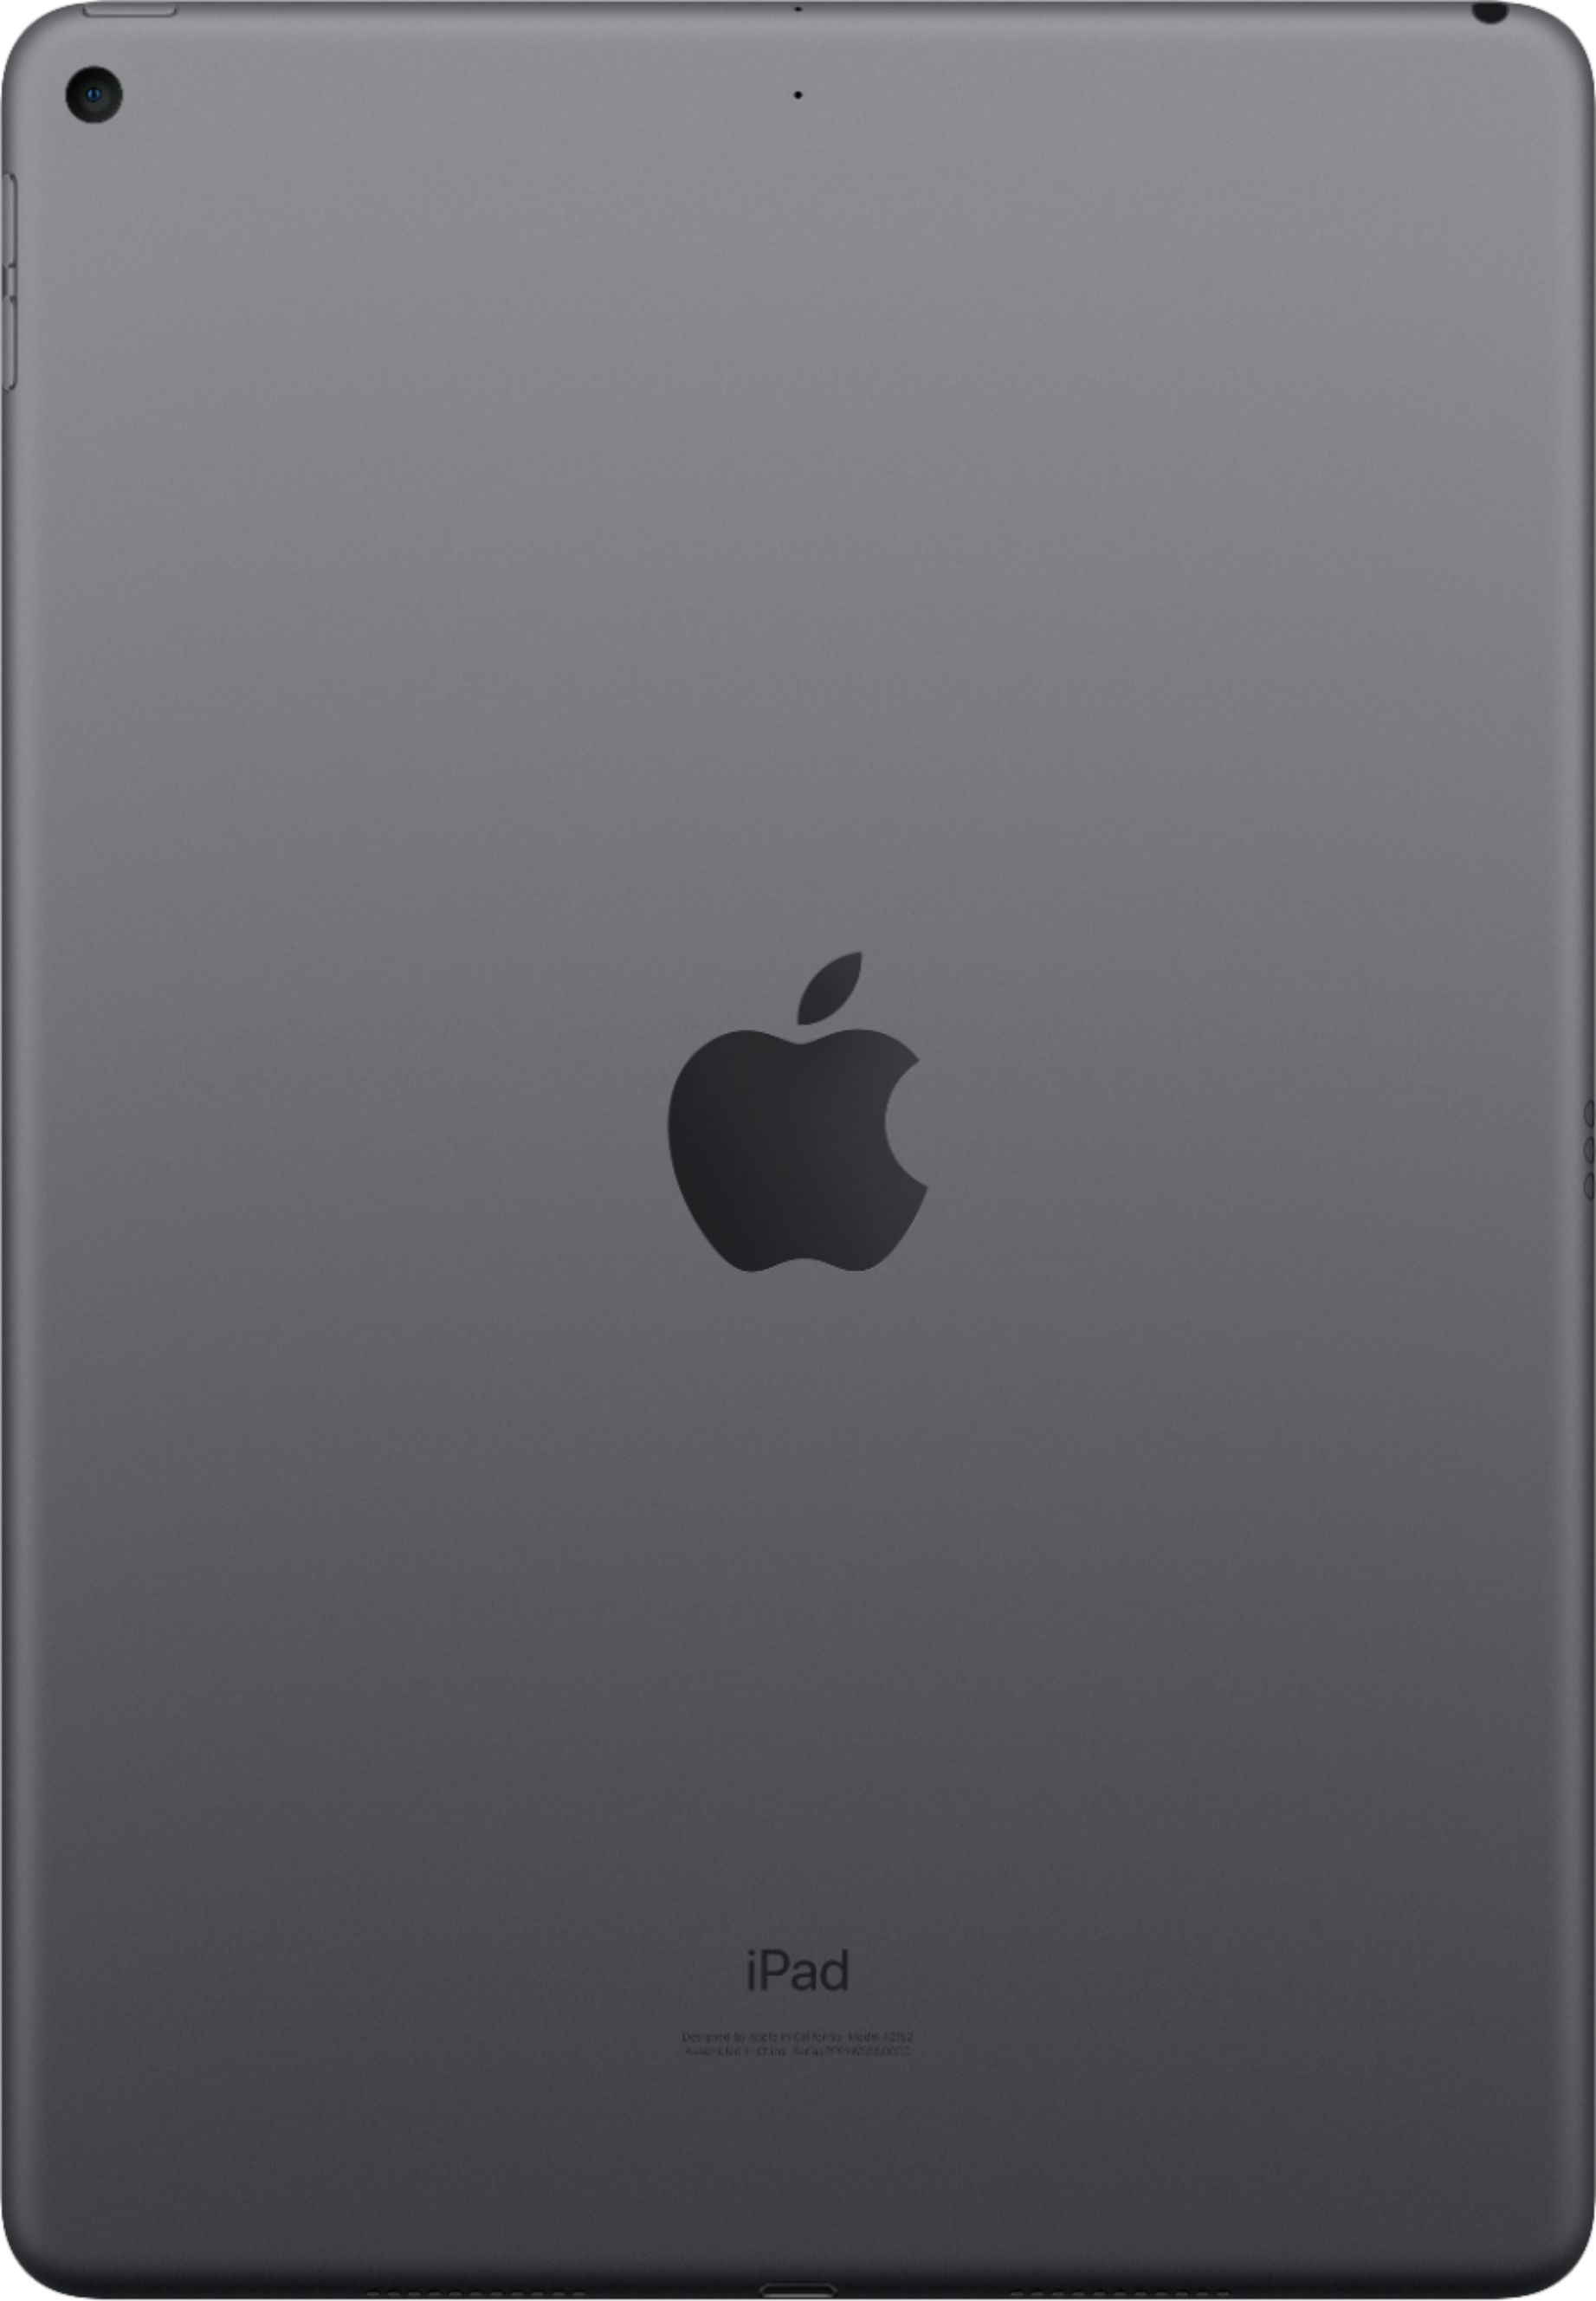 iPad mini 3 64GB Wifi + Cellular Silver (2014) - Refurbished product